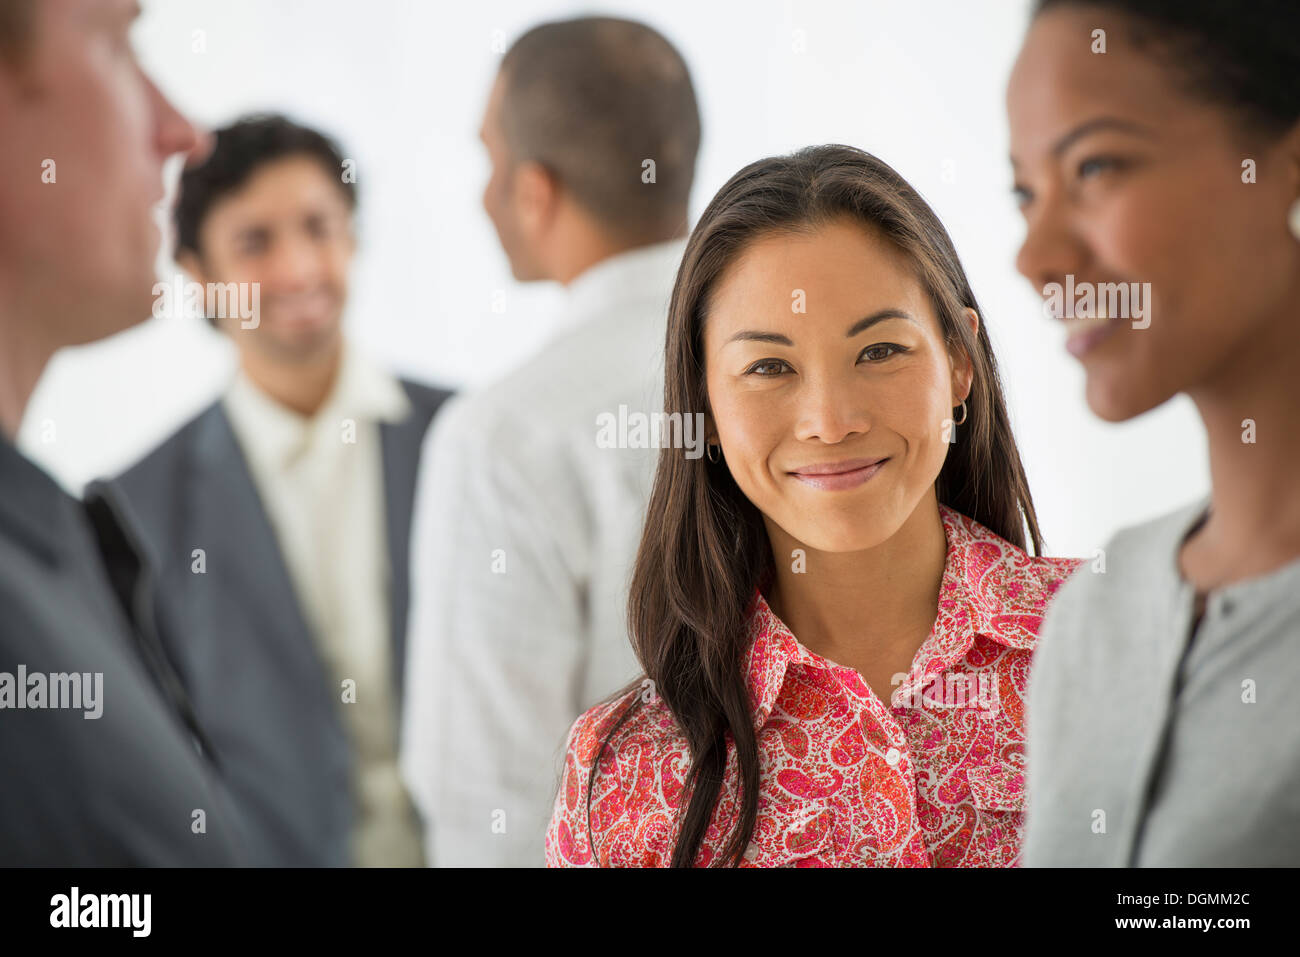 Geschäft. Ein Team von Menschen, eine Multi-ethnische Gruppe, Männer und Frauen in einer Gruppe. Stockfoto